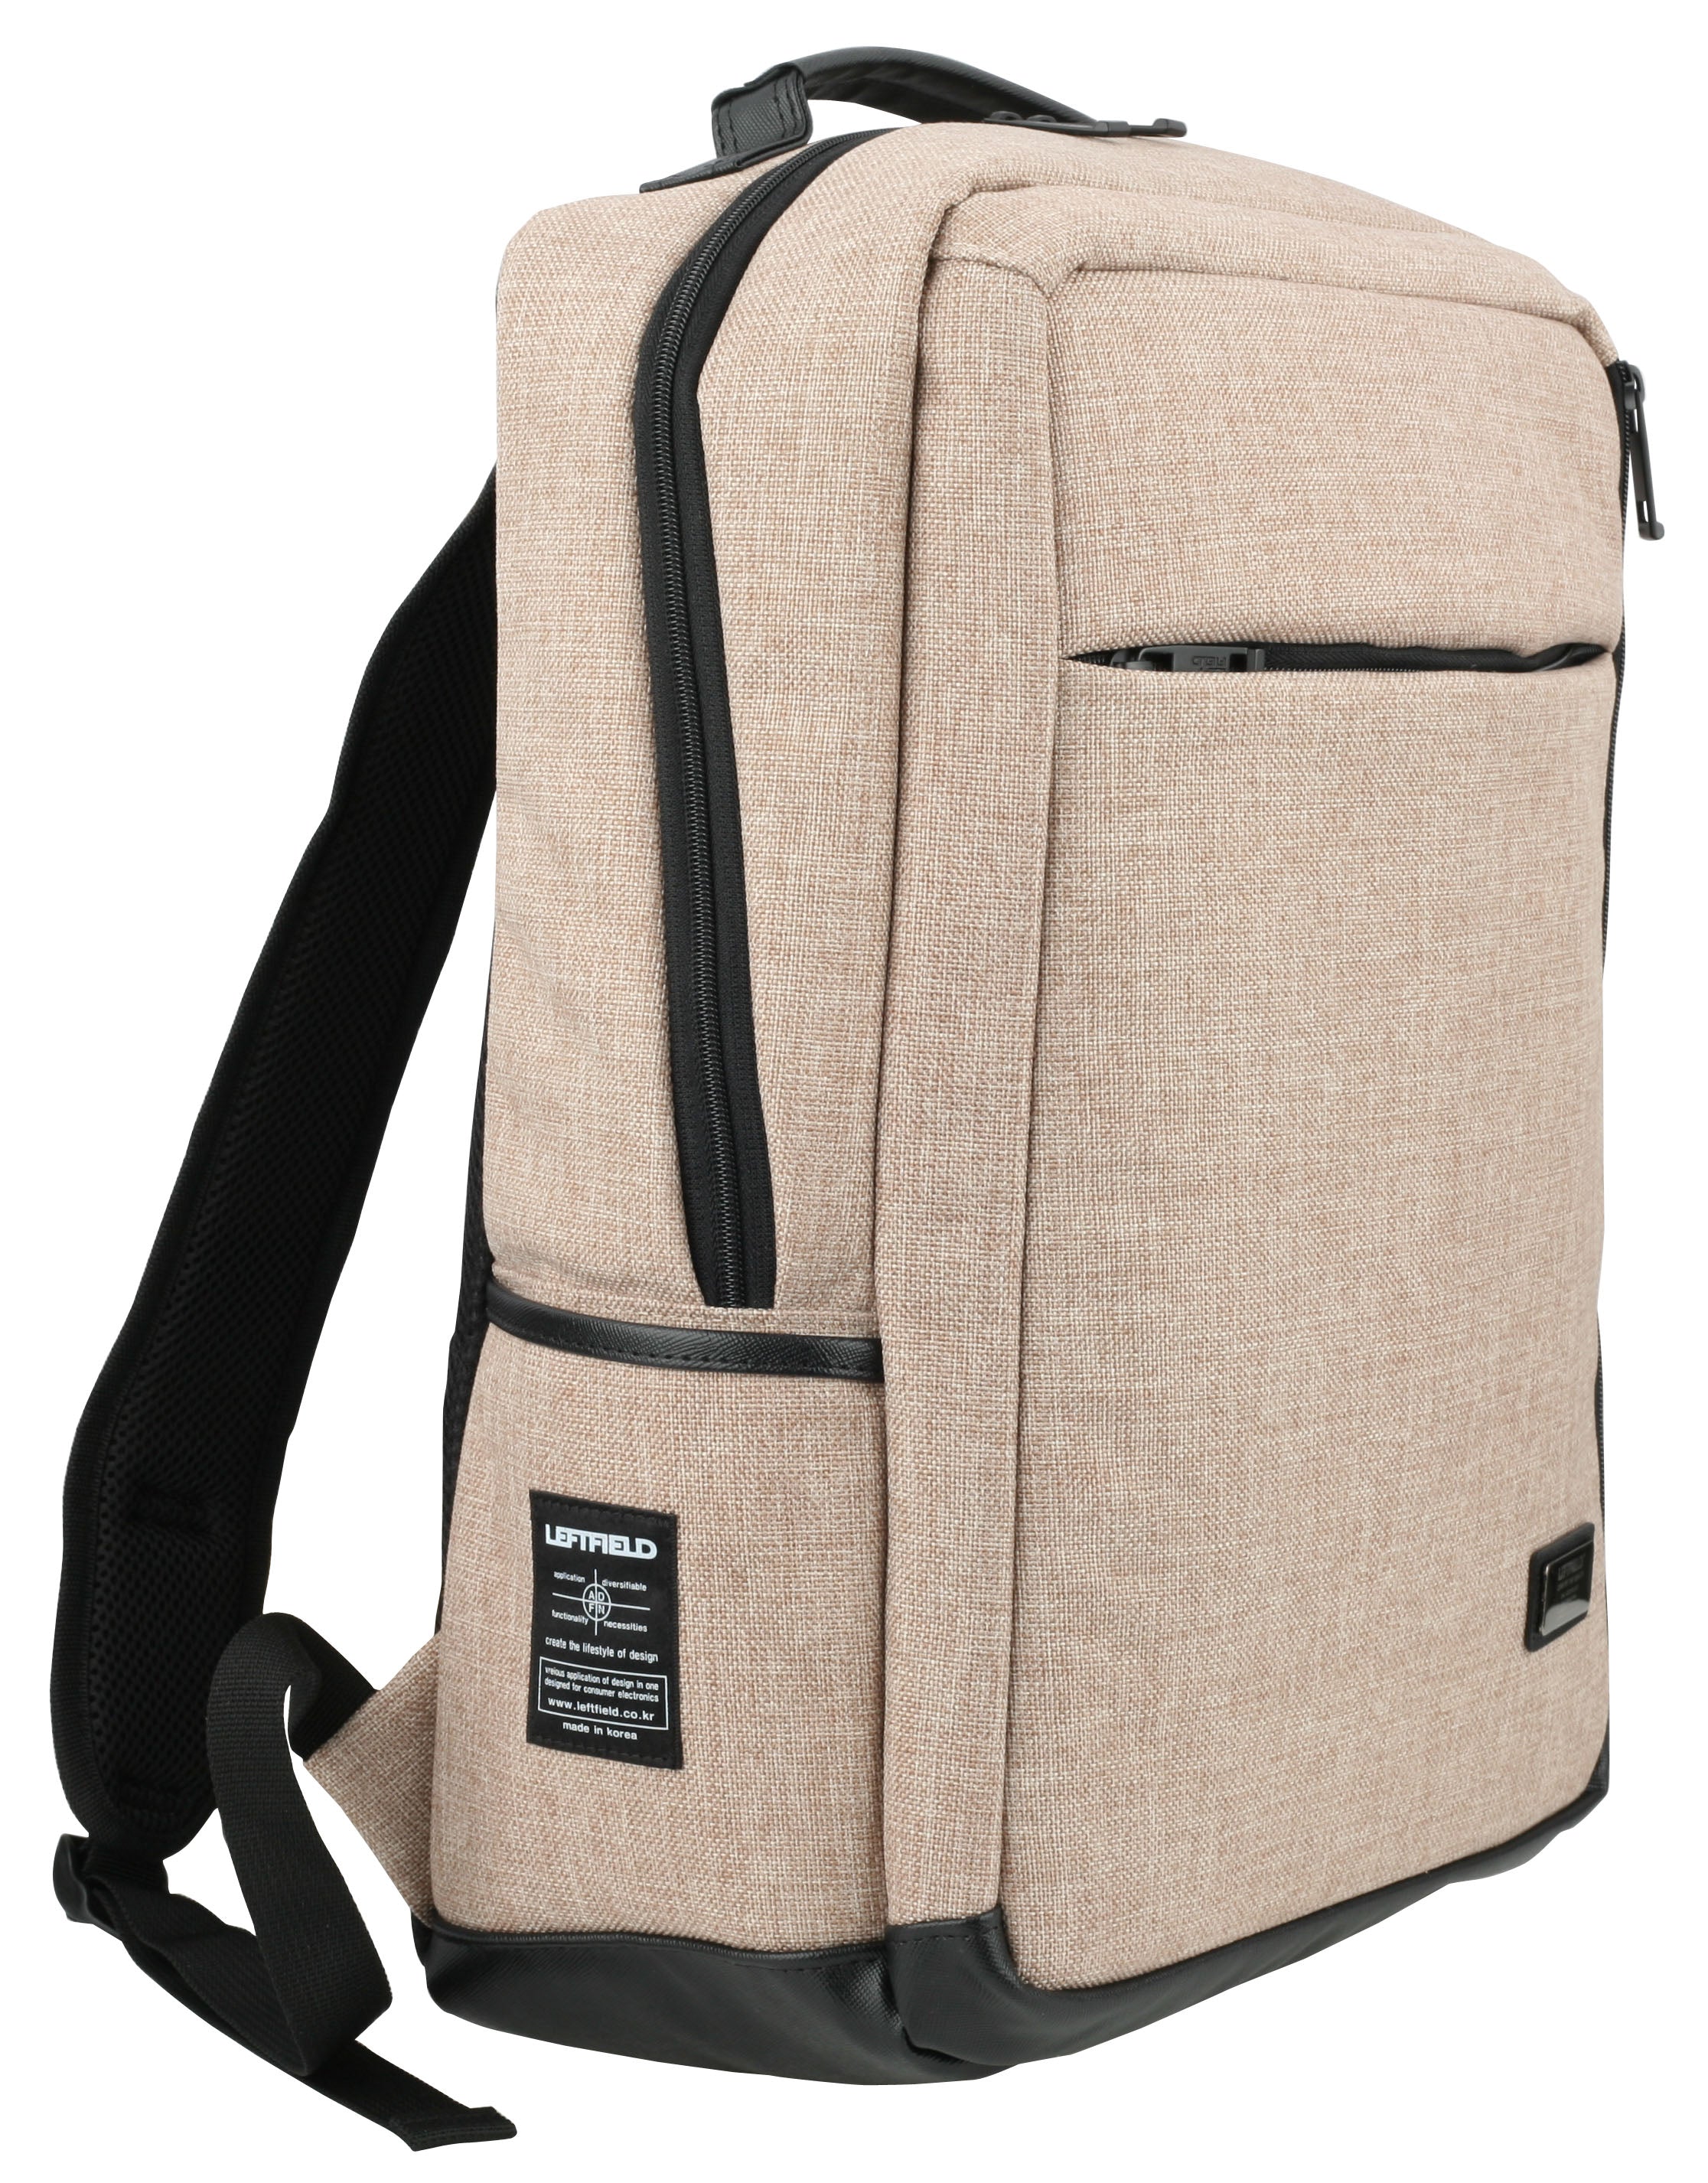 Beige Casual Laptop School Backpacks